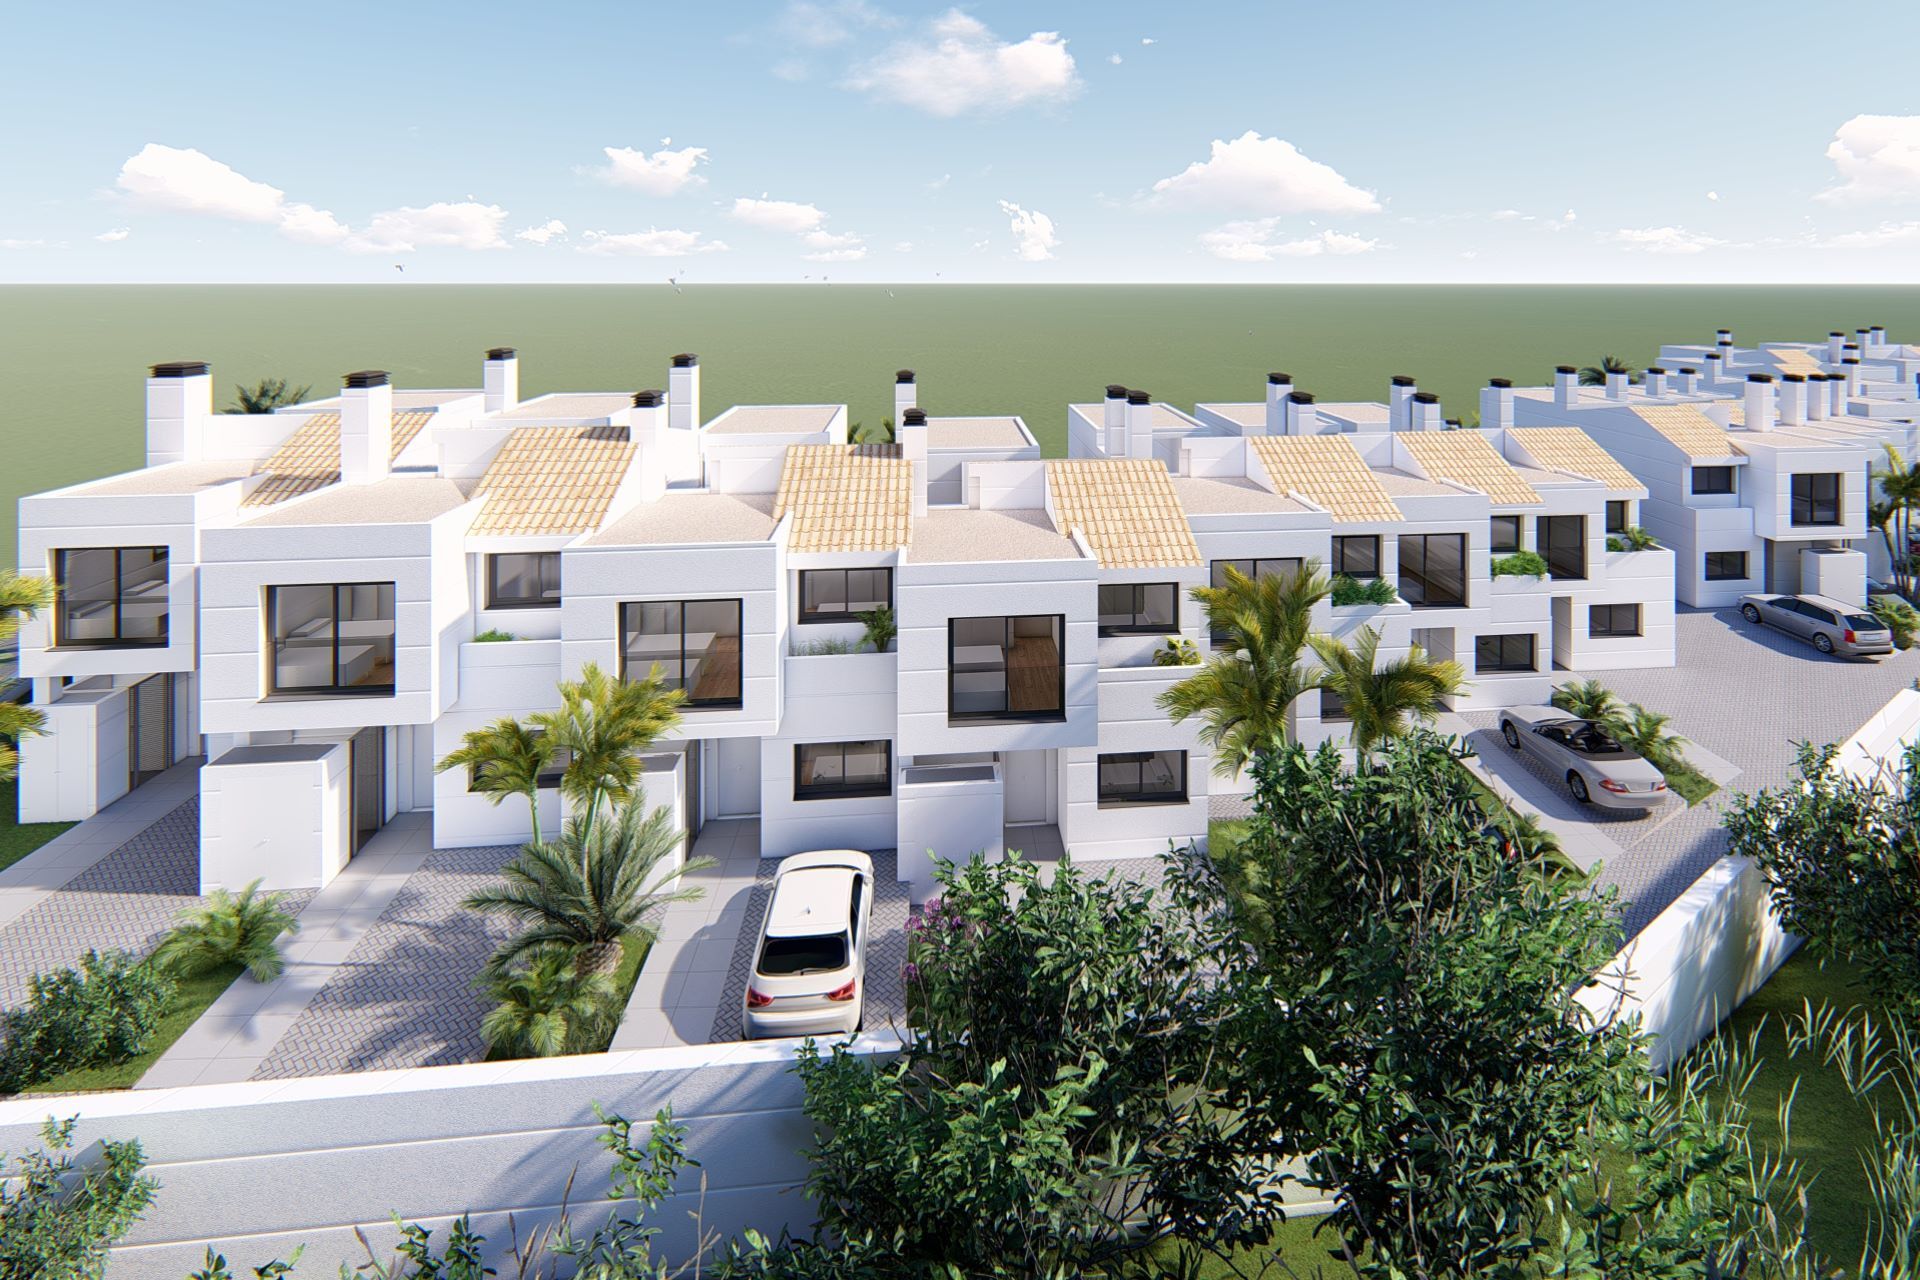 New Development of Townhouses in Benahavis Town | Engel & Völkers Marbella